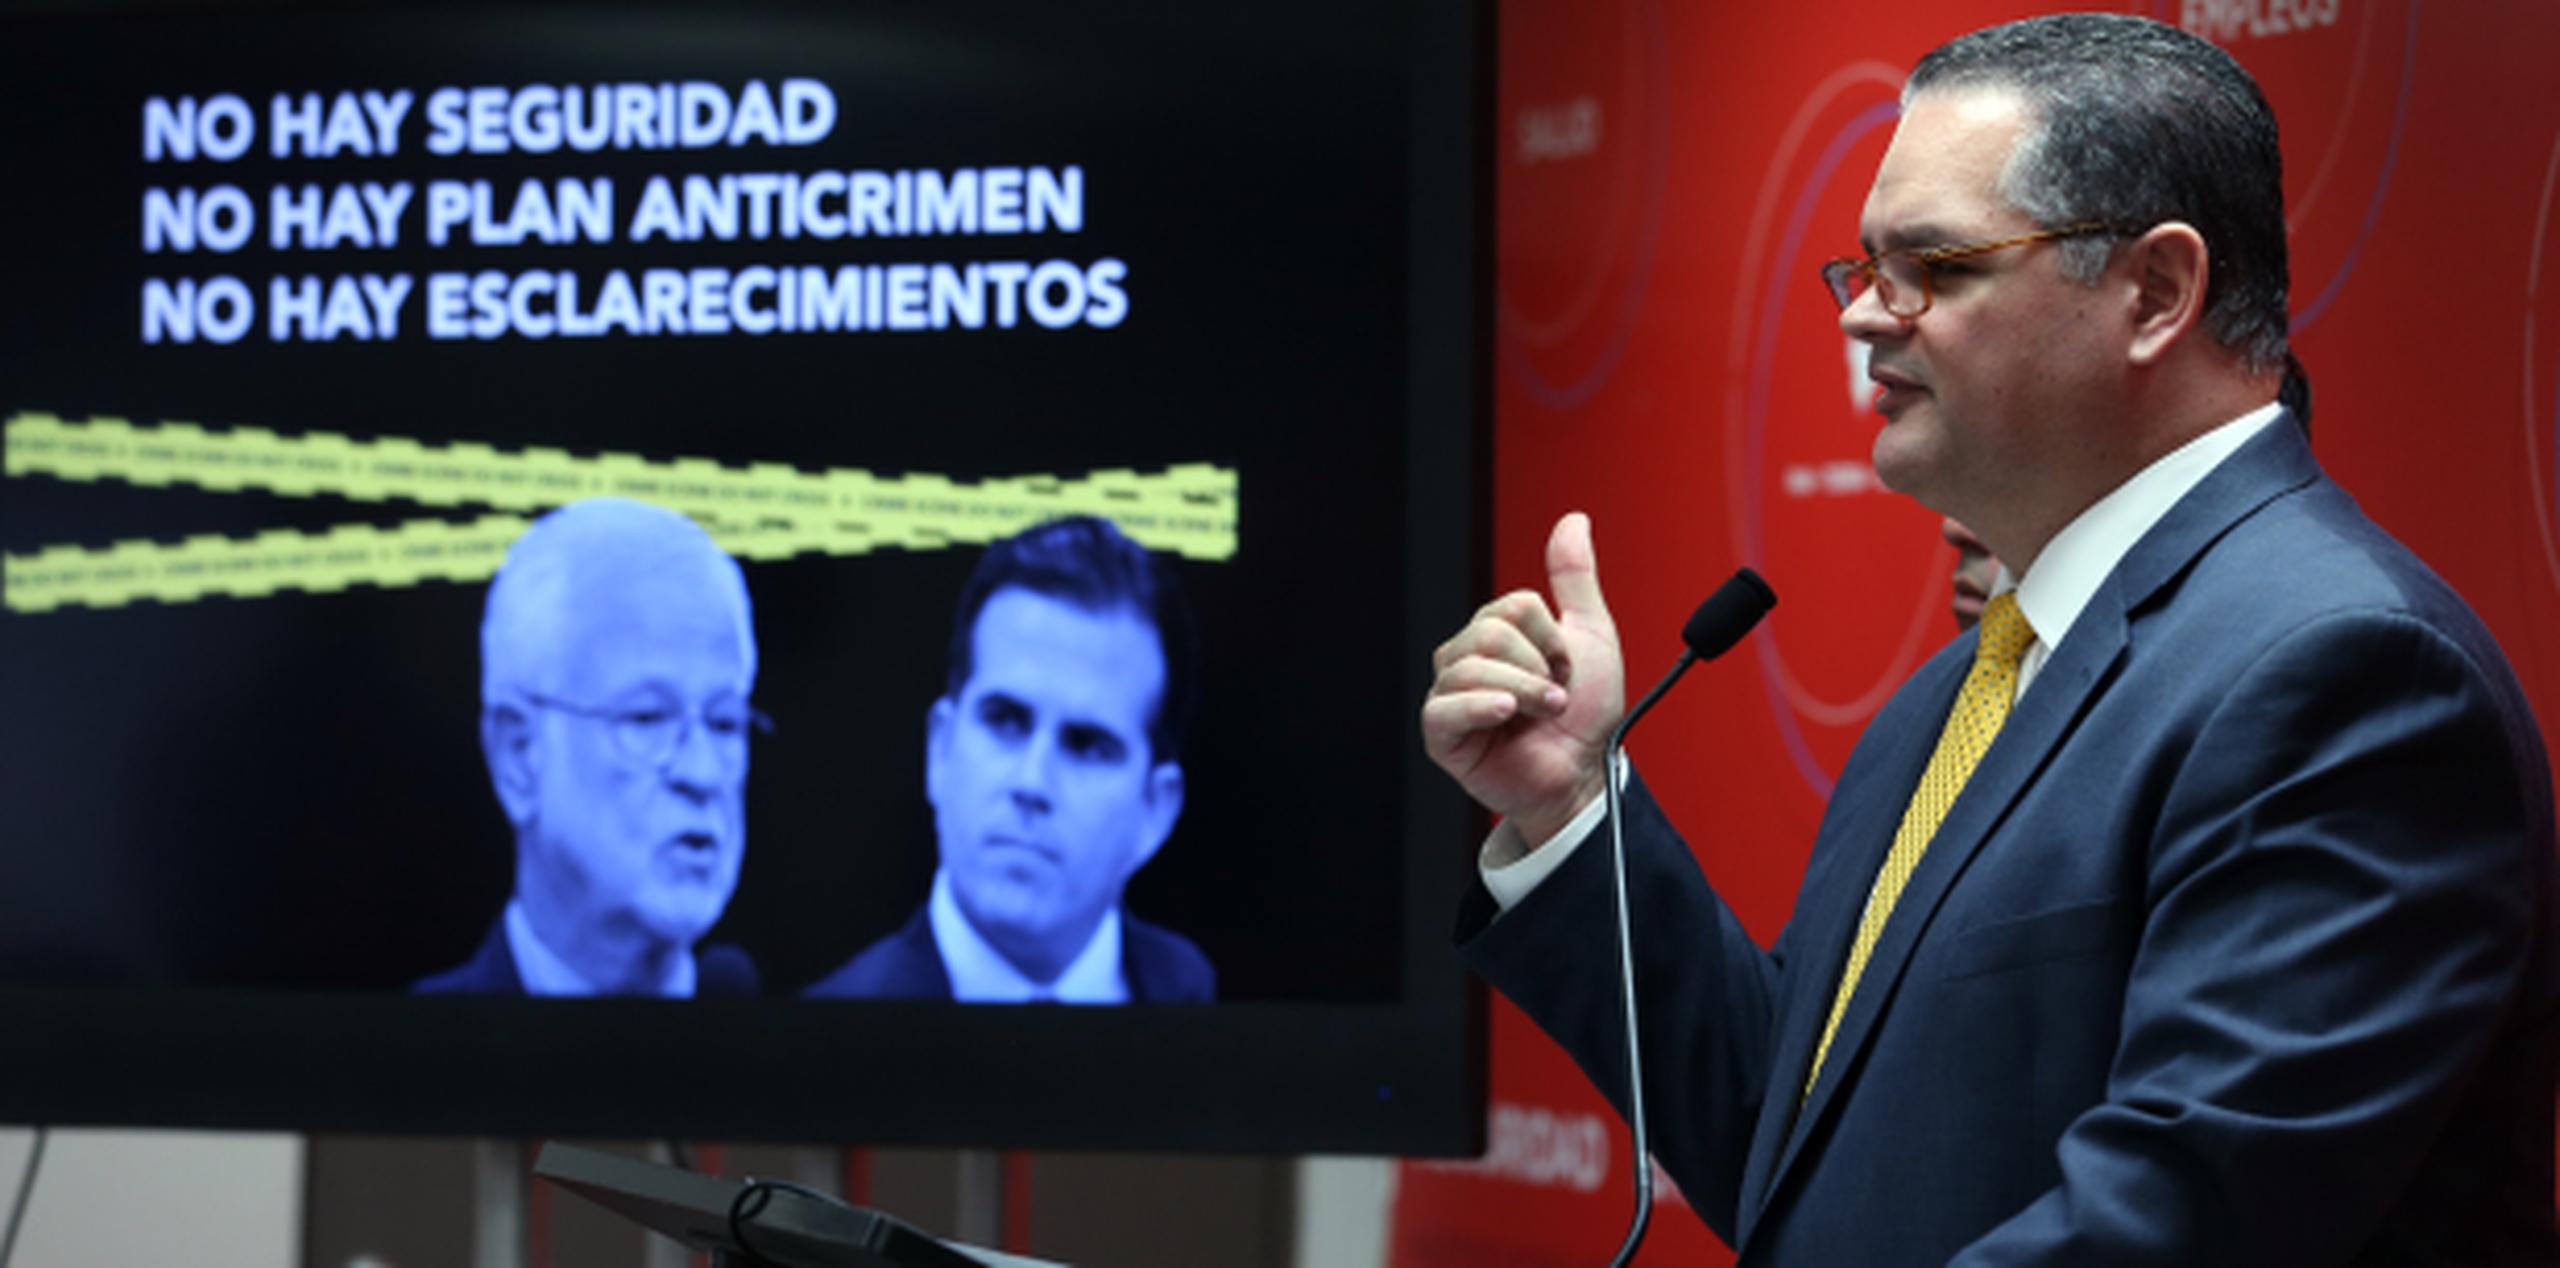 Aníbal José Torres, senador PPD  (juan.martinez@gfrmedia.com)